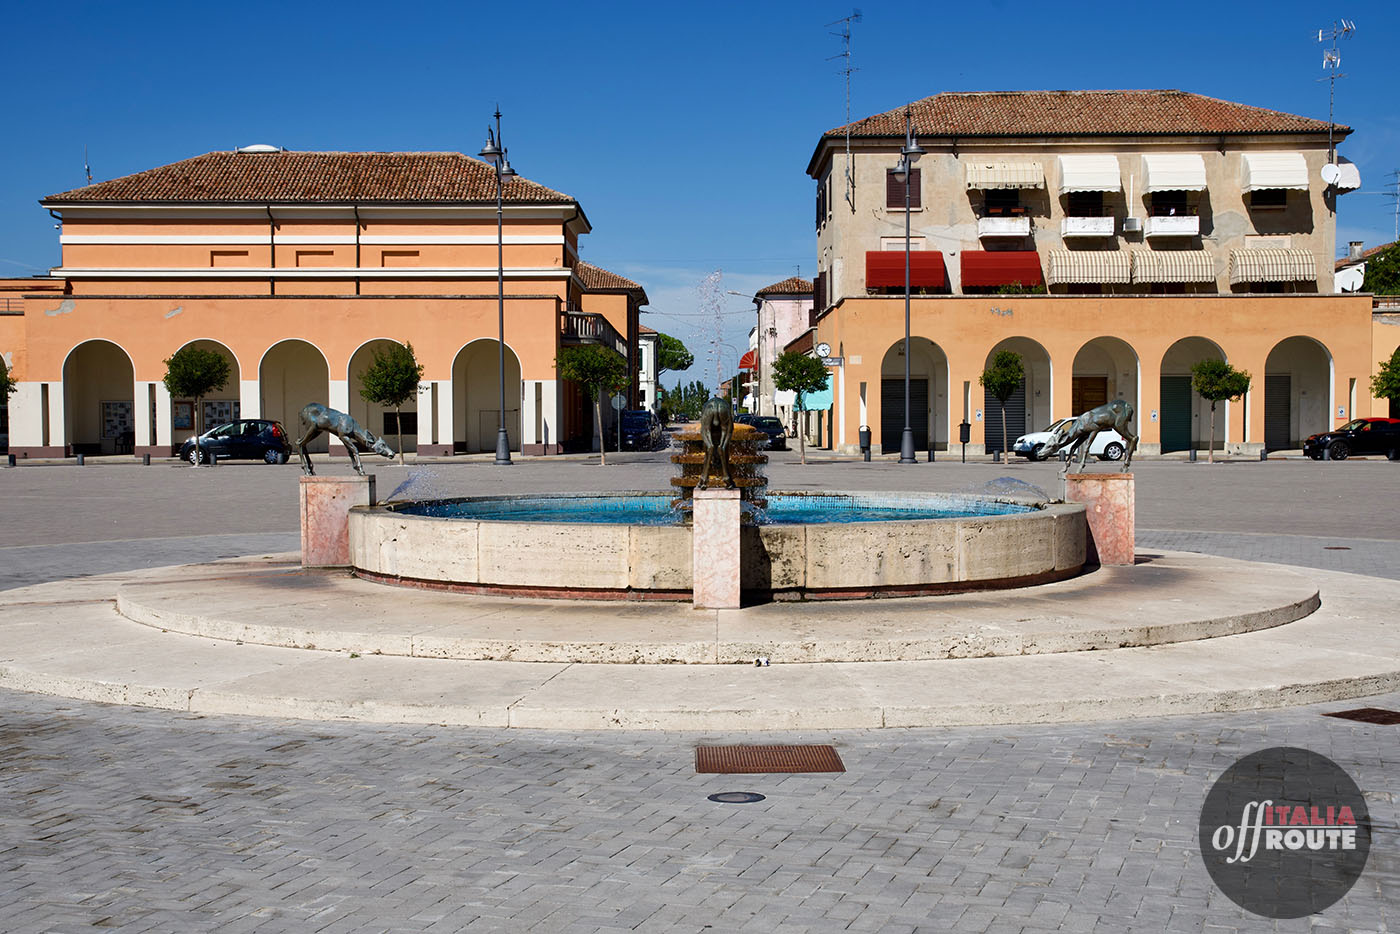 La piazza centrale di Tresigall